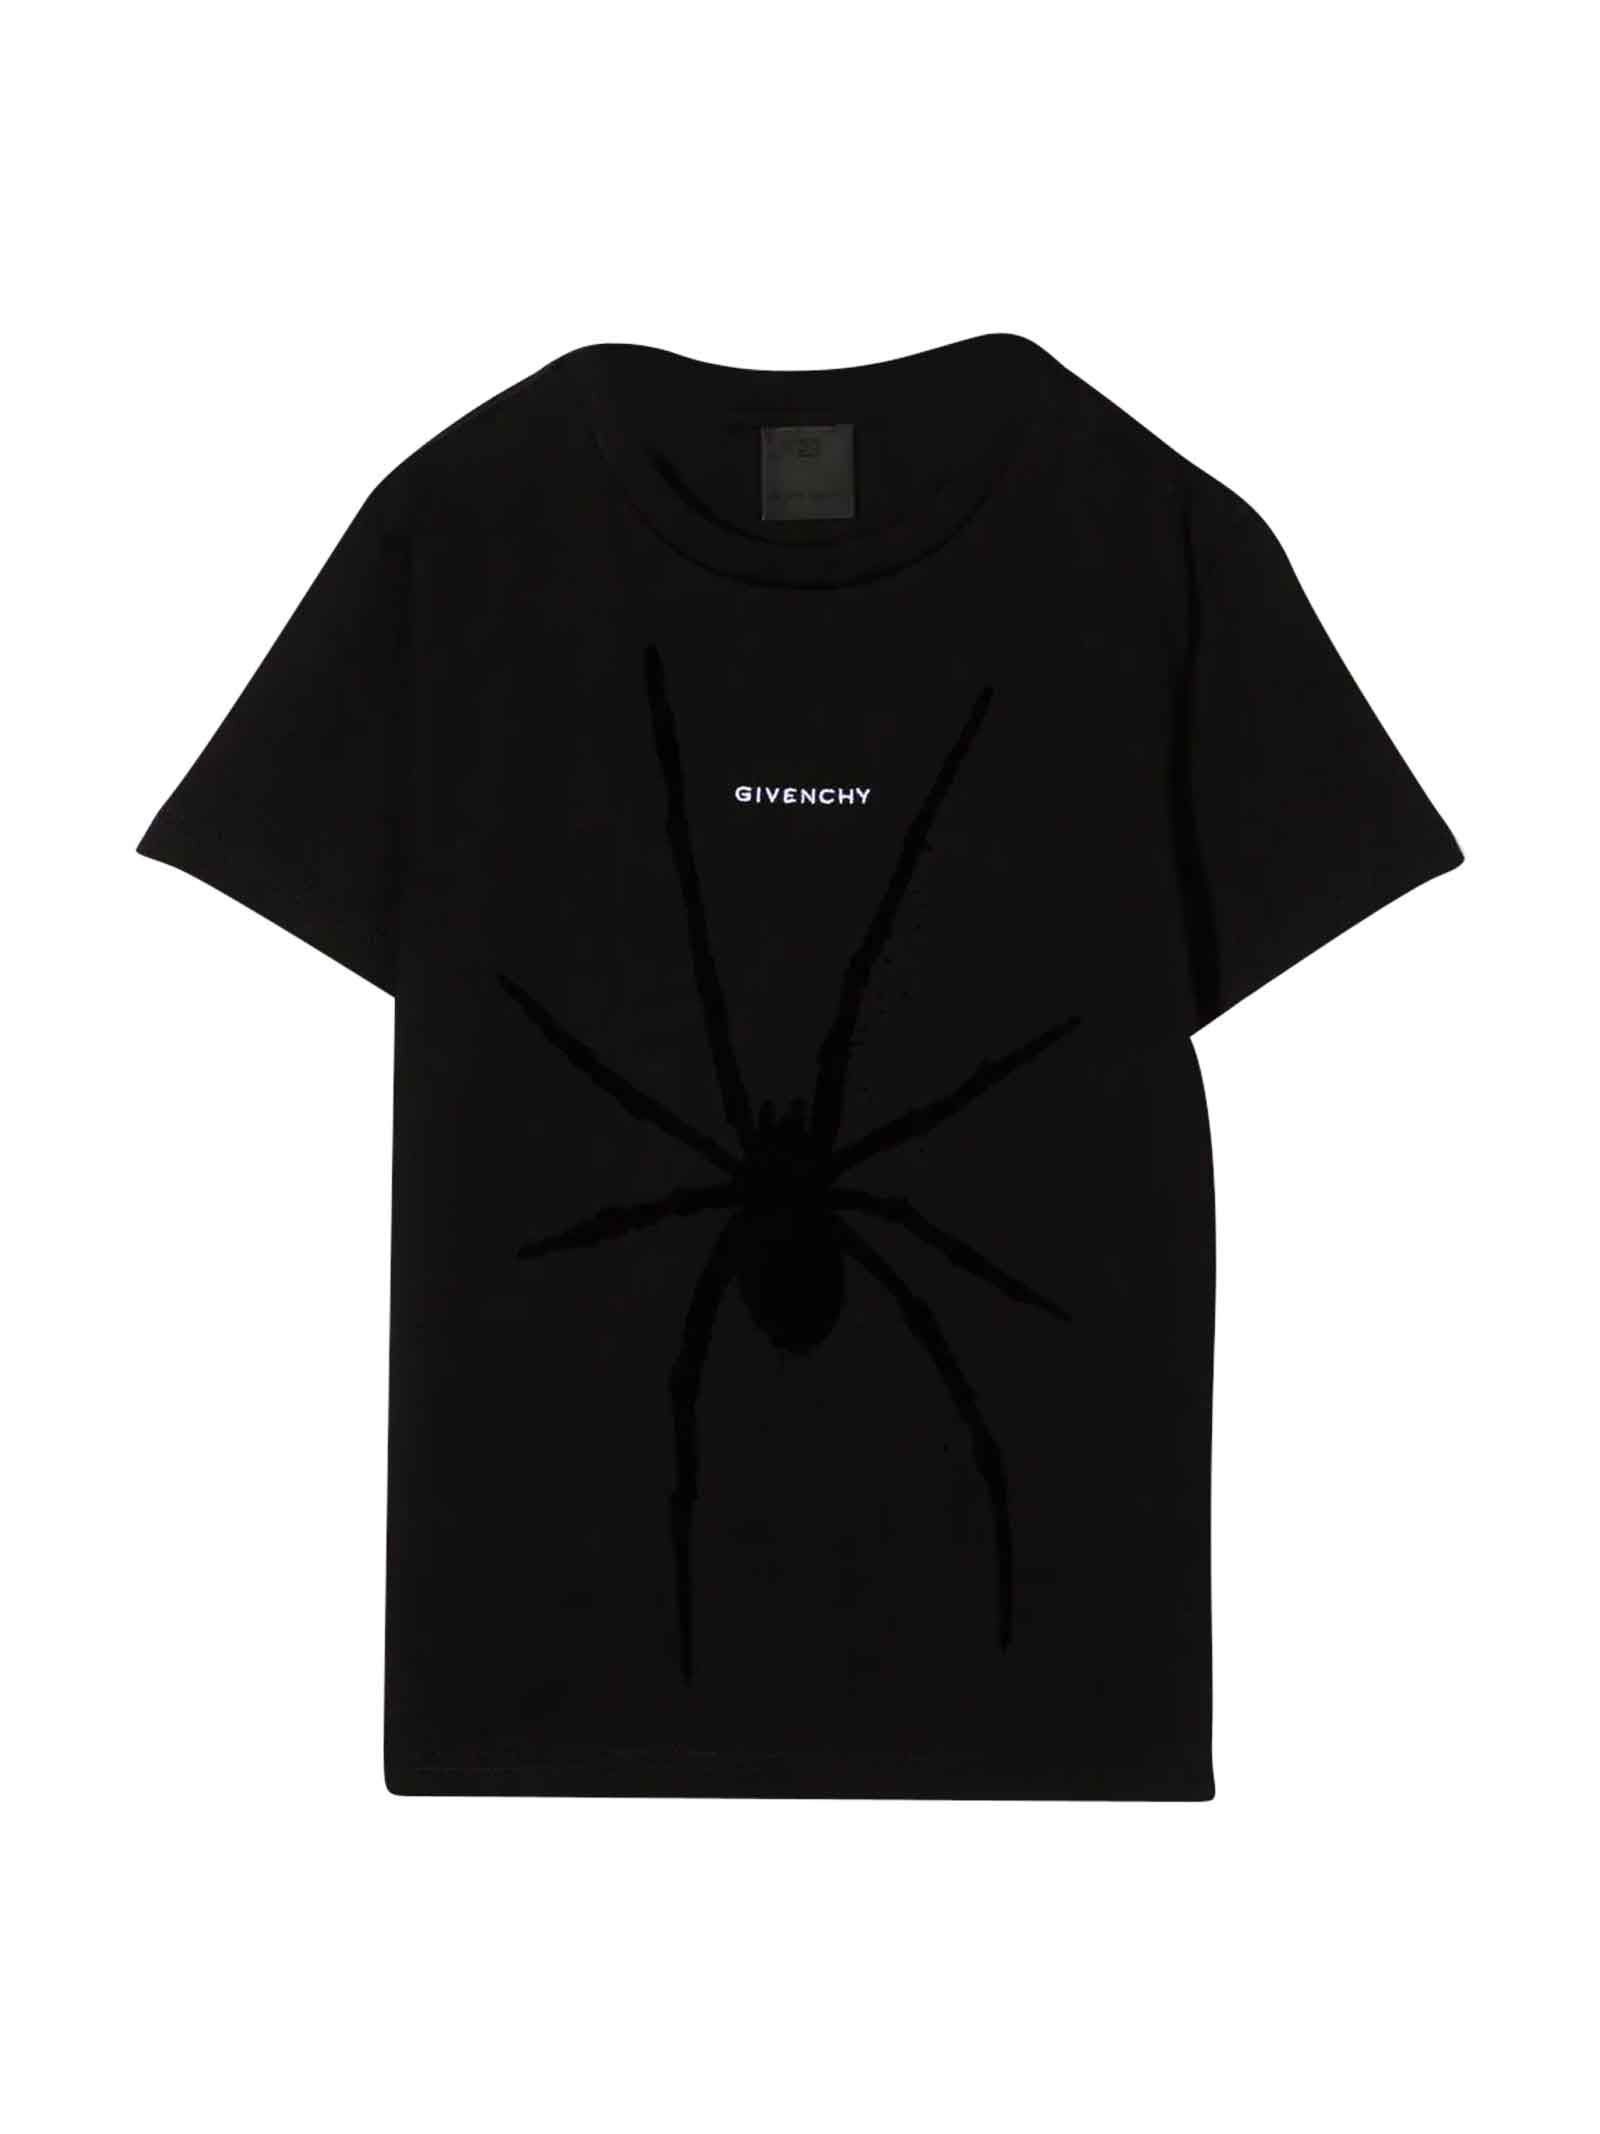 Givenchy Black T-shirt Boy